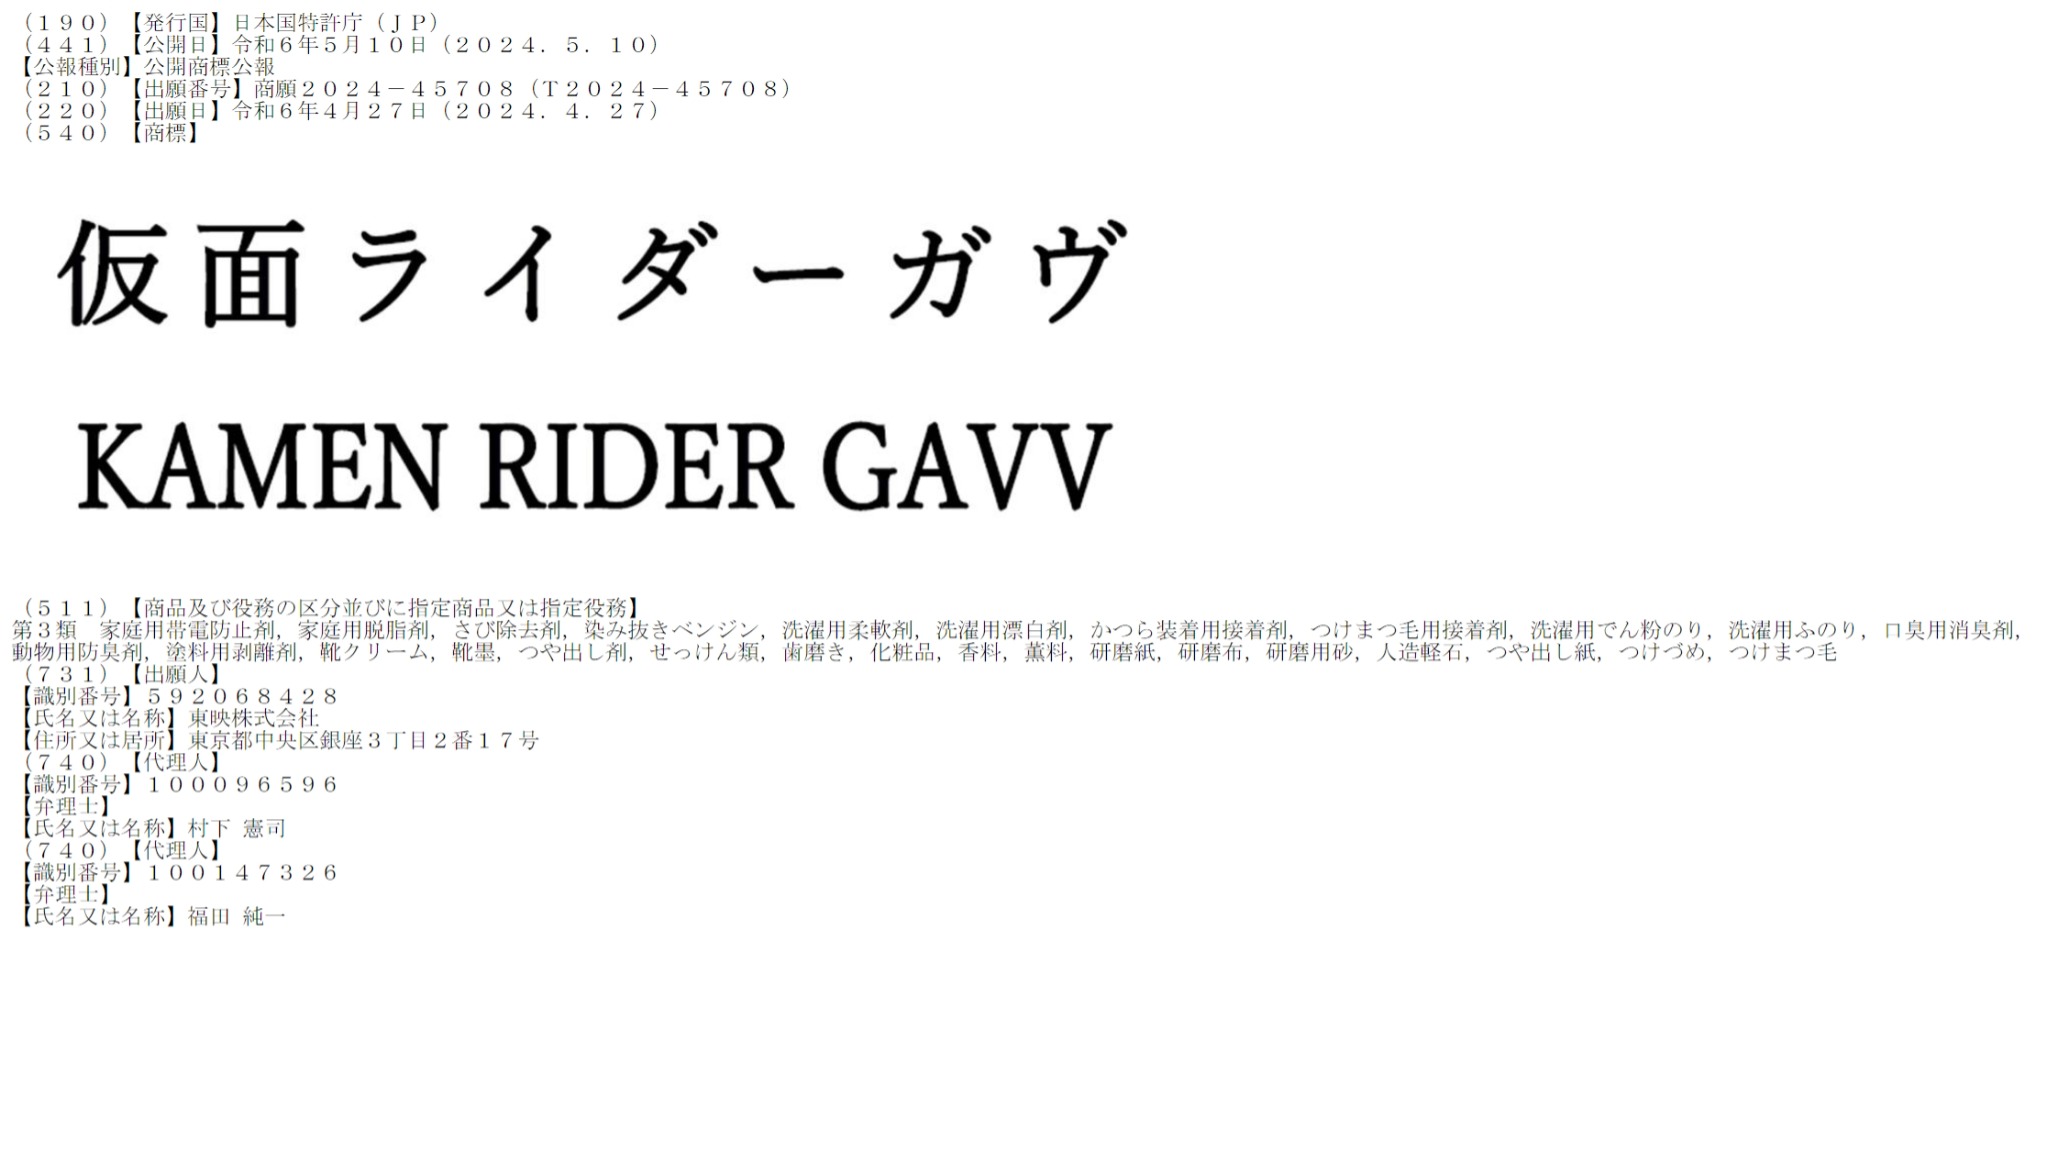 New Kamen Rider Trademark Revealed- KAMEN RIDER GAVV!